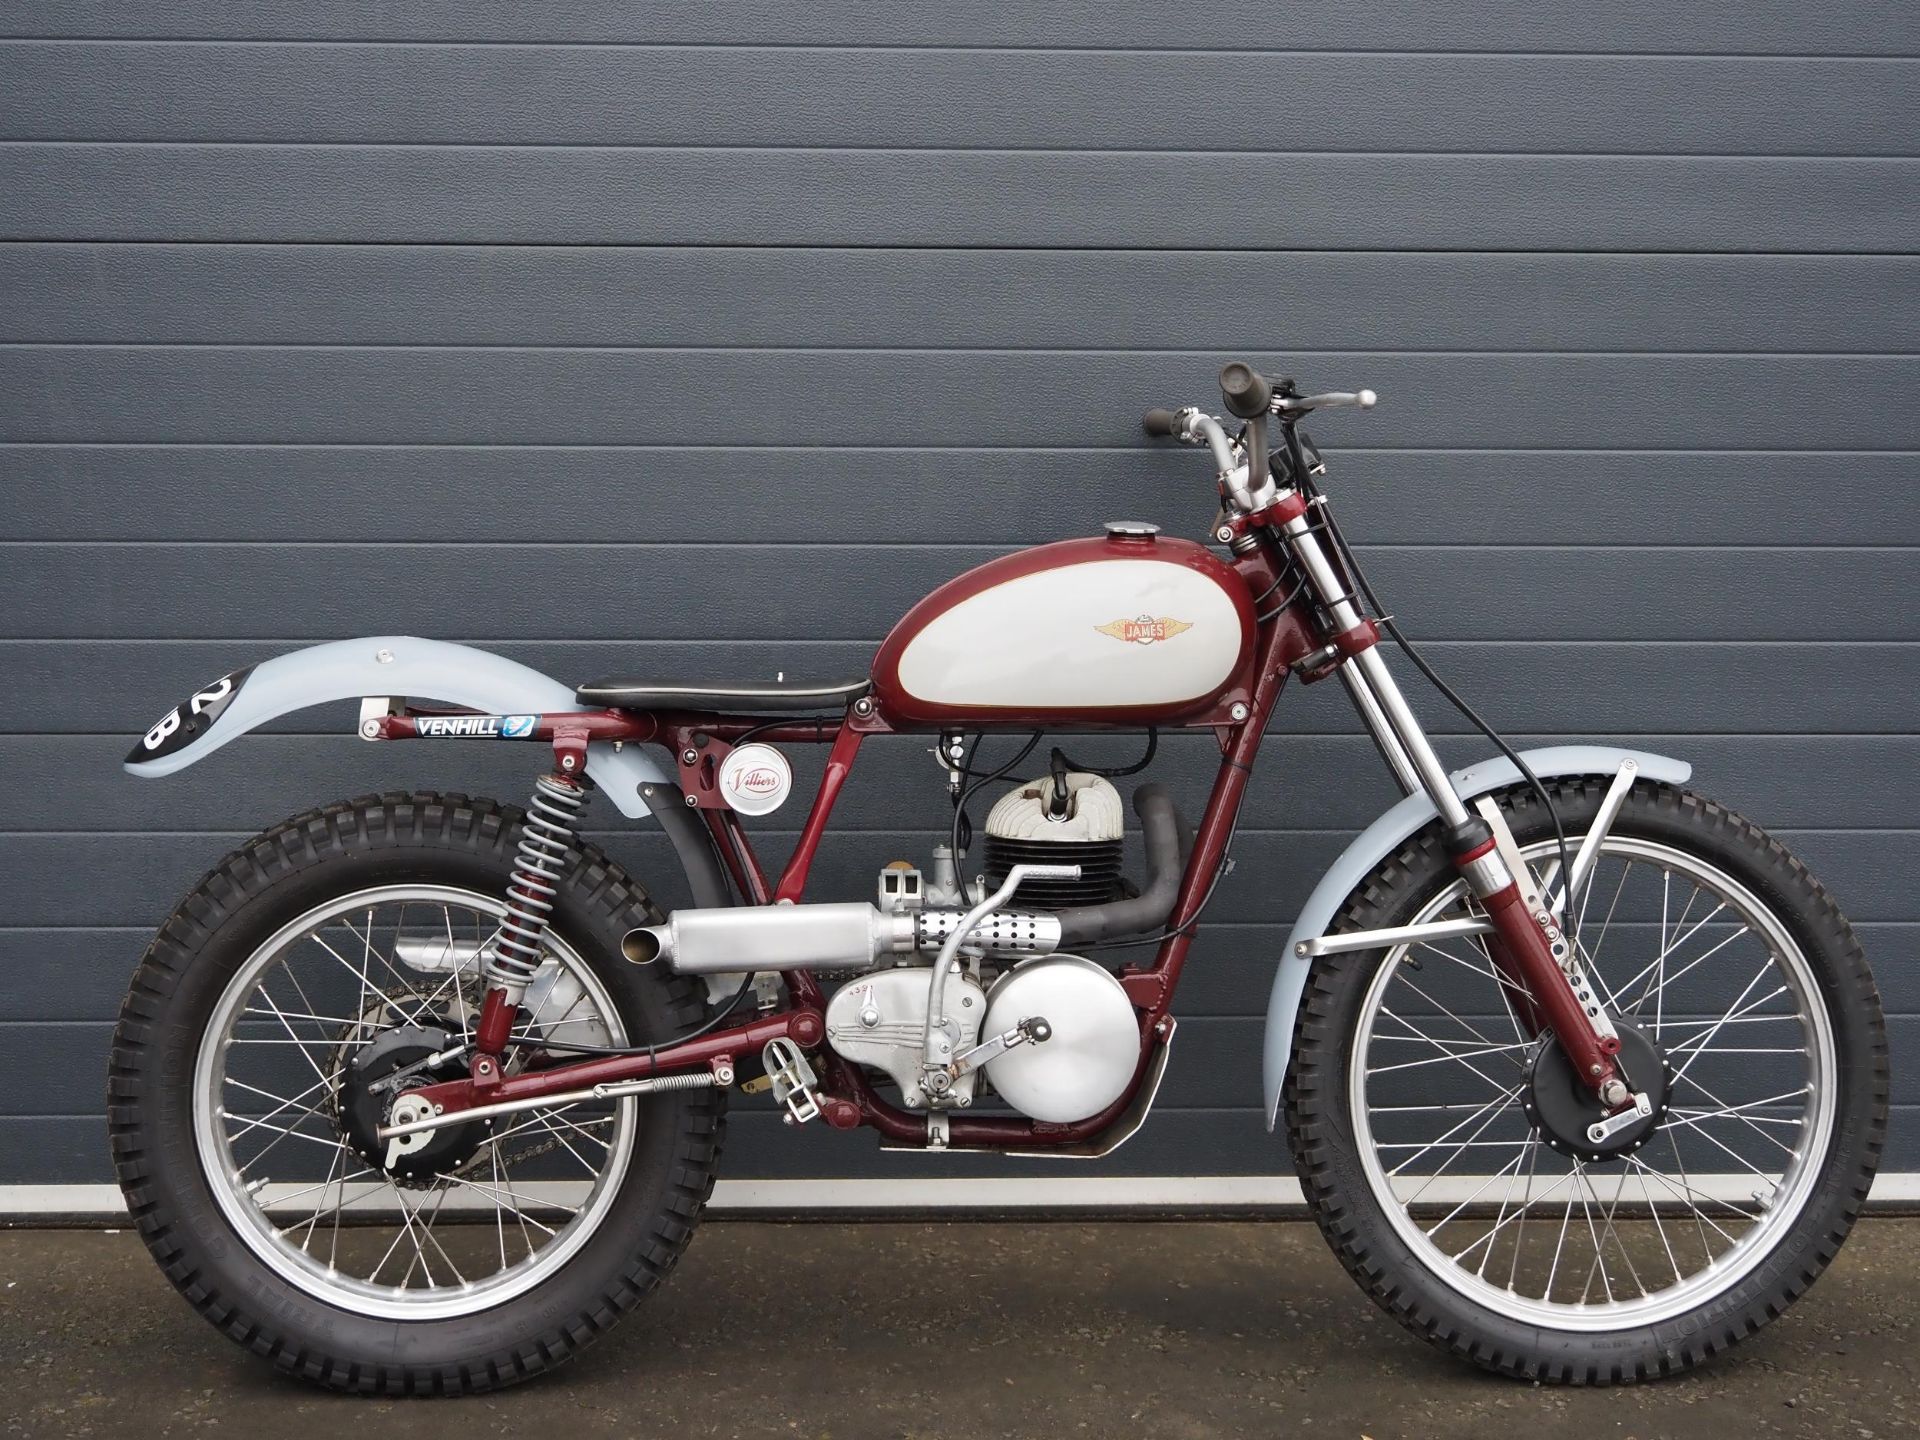 James trials bike. 197cc. 1960. Frame No. CL201400 Engine No. 365A33476 Runs and rides. Needs